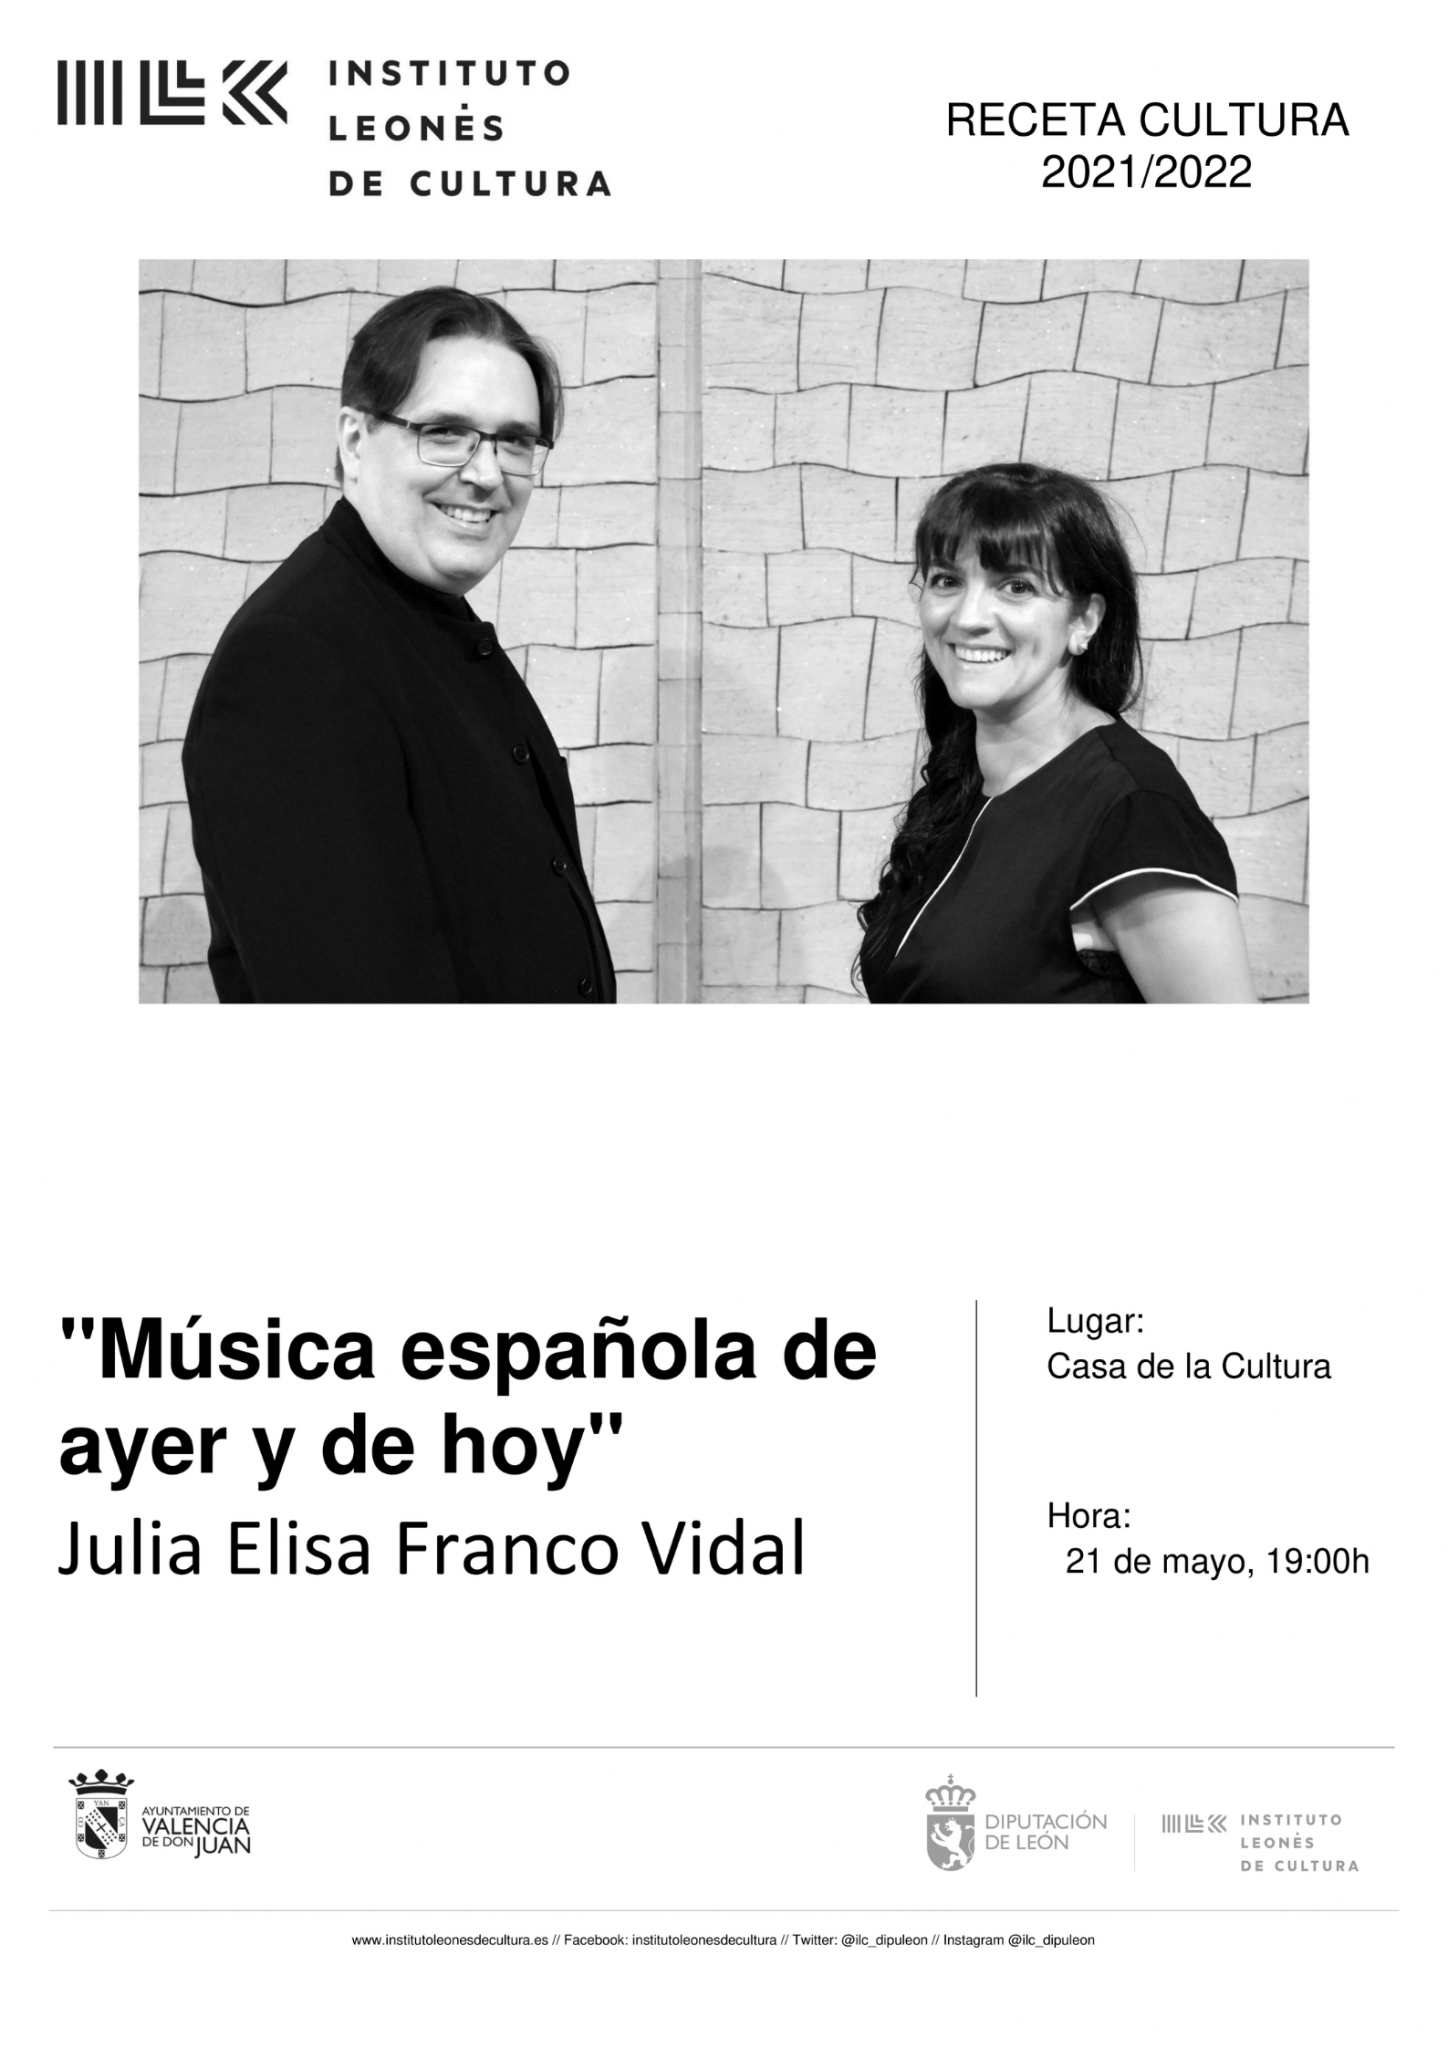 Música española de ayer y de hoy